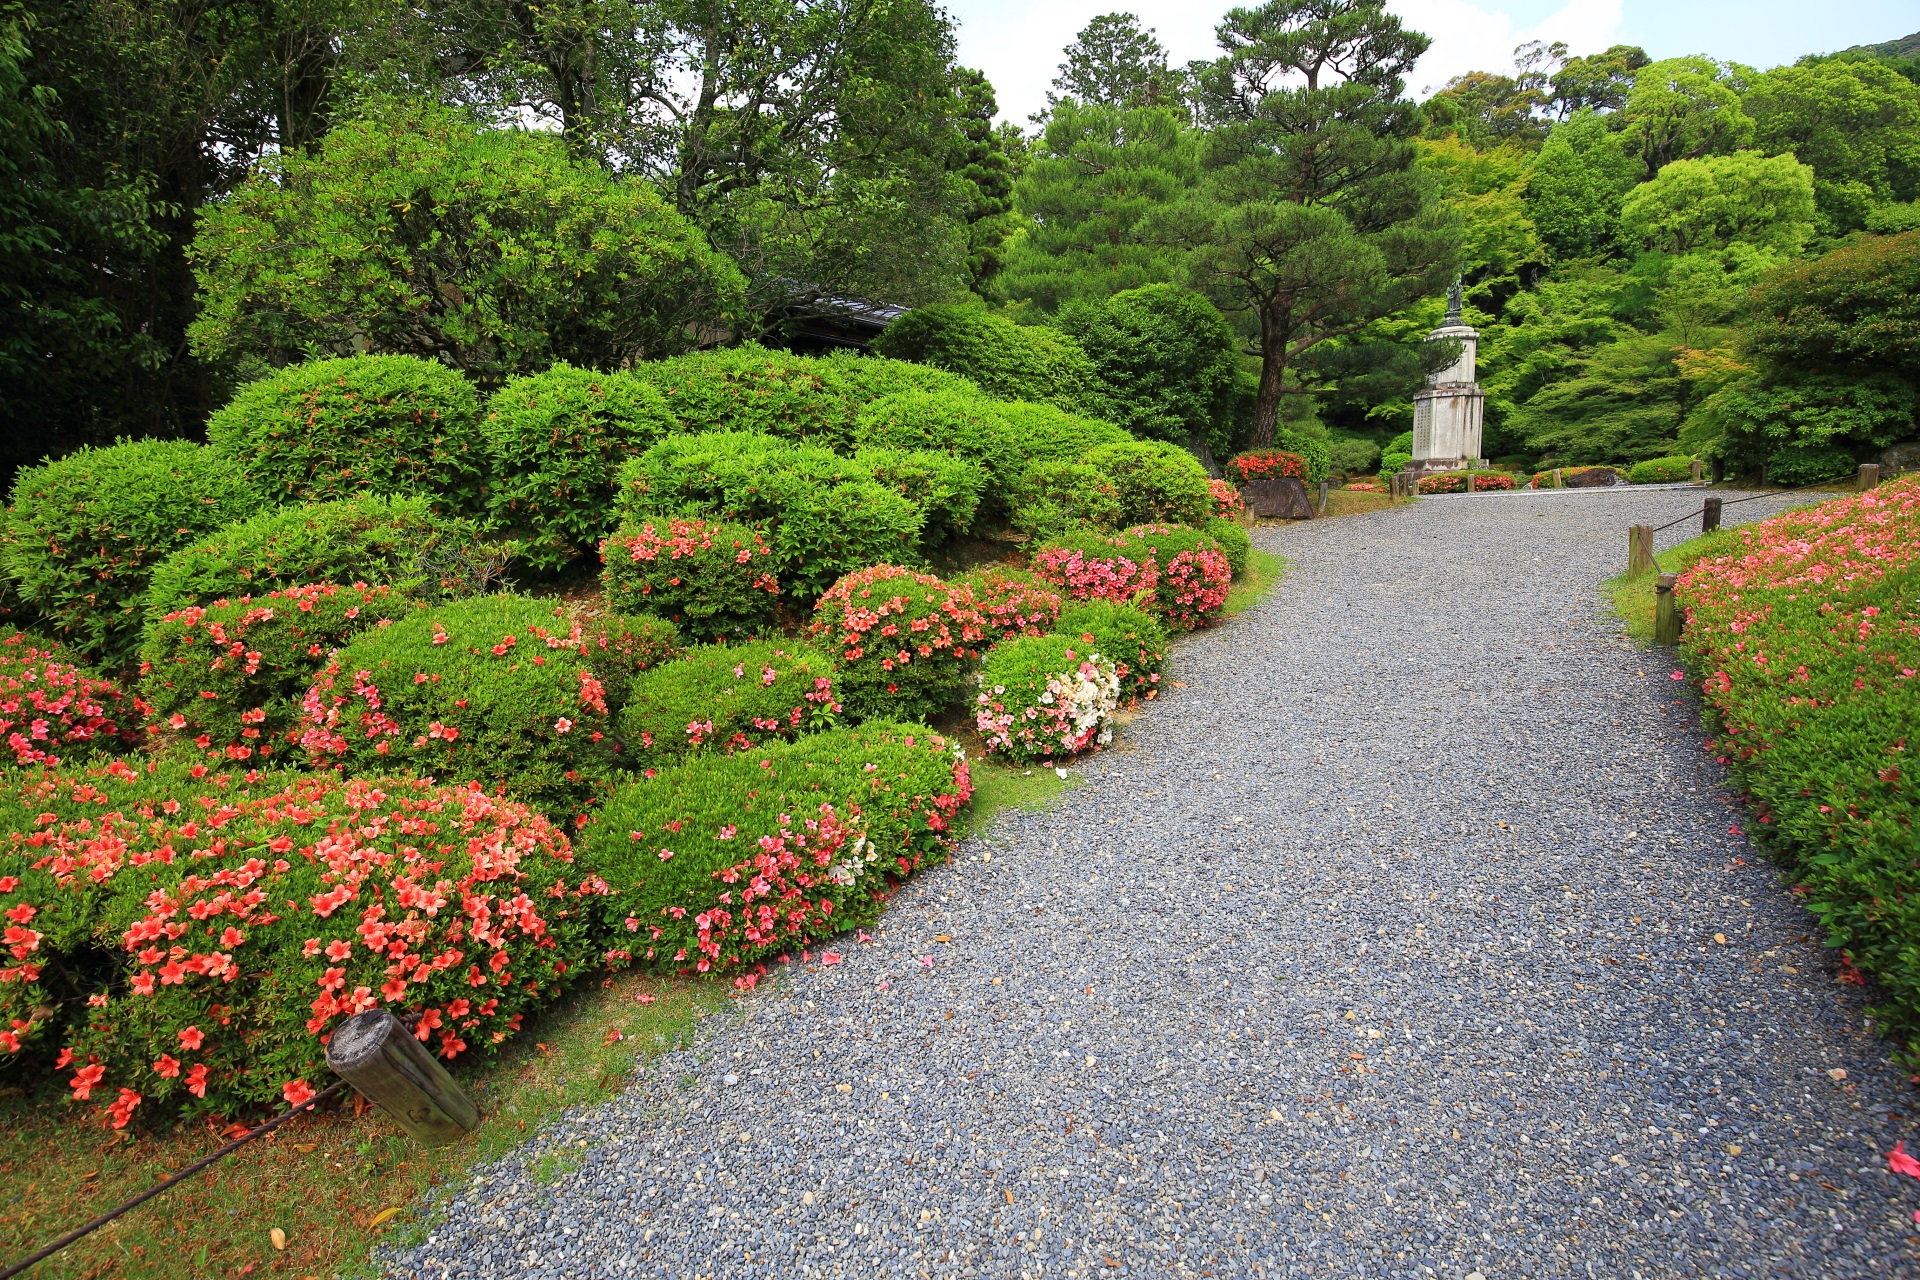 知恩院友禅苑の淡く美しい緑に映える華やかなサツキ